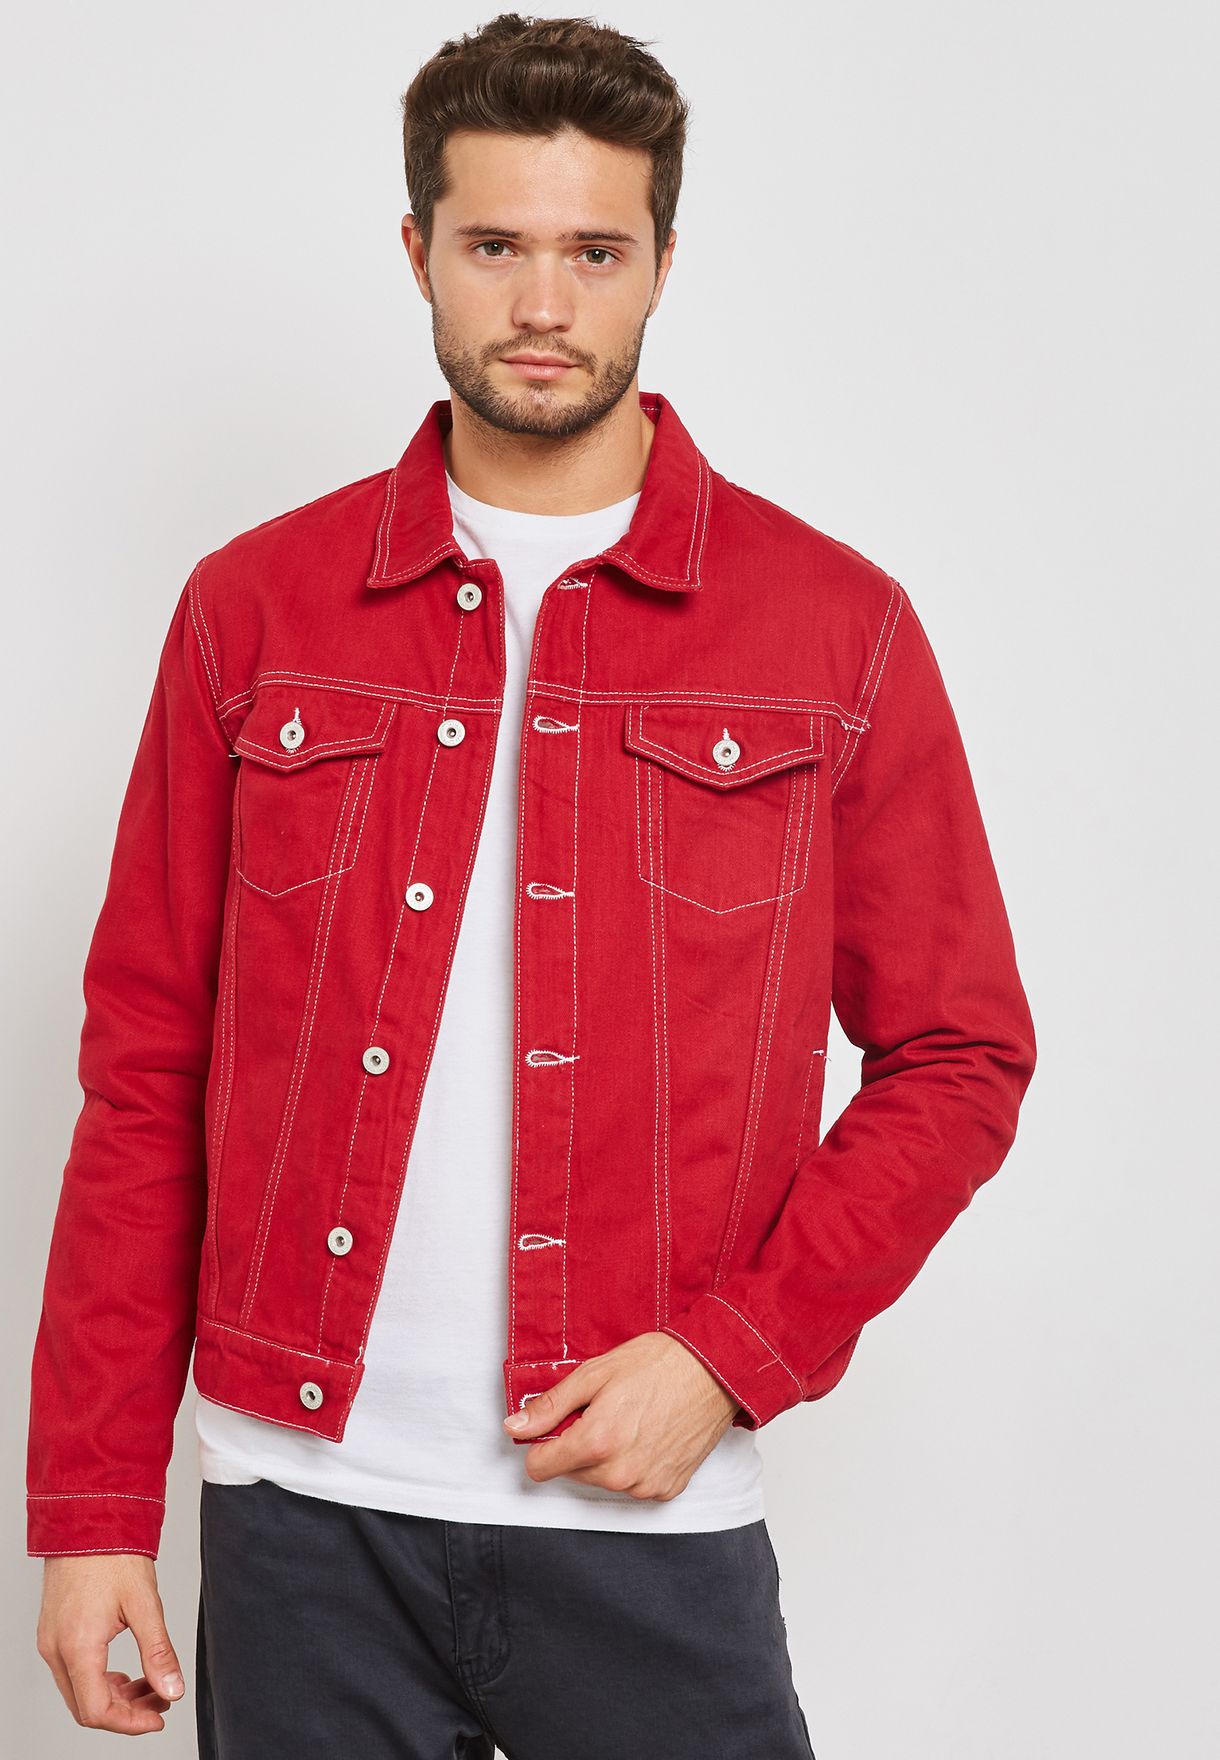 skechers jacket mens red